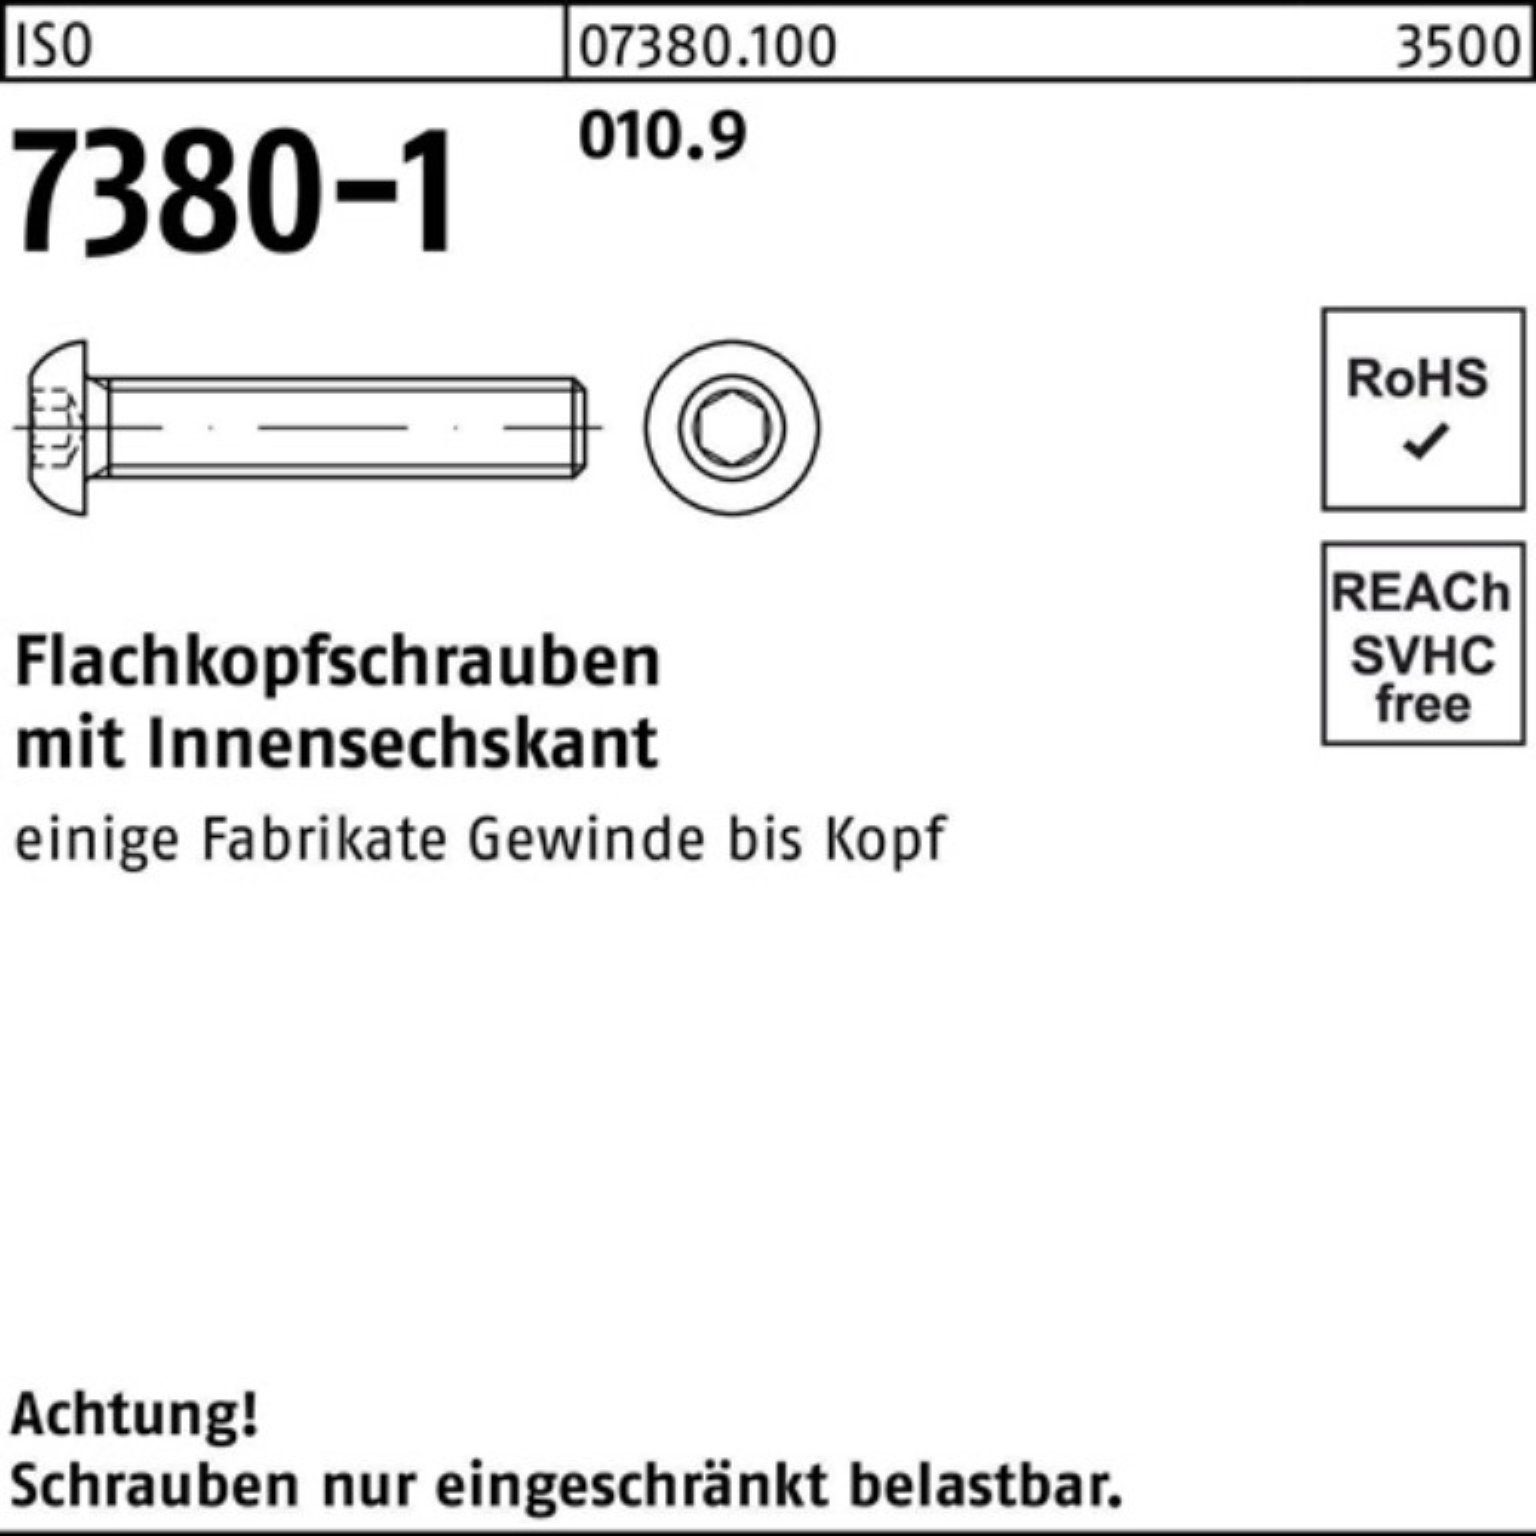 Reyher Schraube 200er Pack Flachkopfschraube M8x 12 Innen-6kt 200 St 010.9 7380-1 ISO